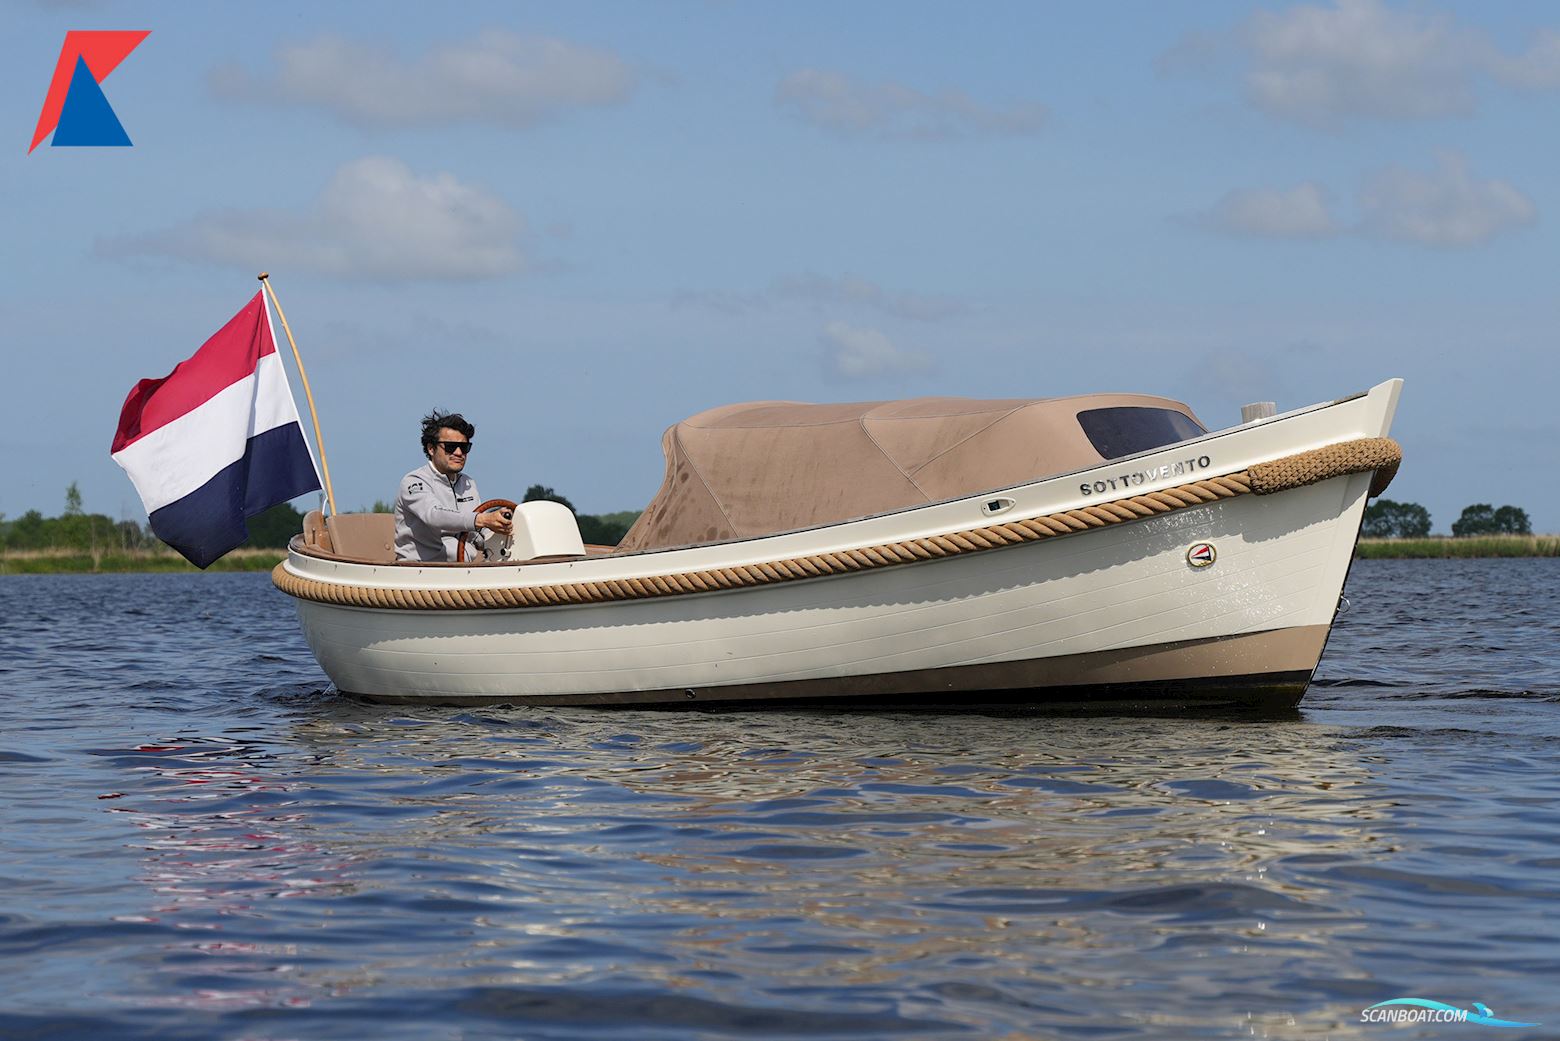 Van Wijk 621 PreTender Motor boat 2016, with Yanmar engine, The Netherlands